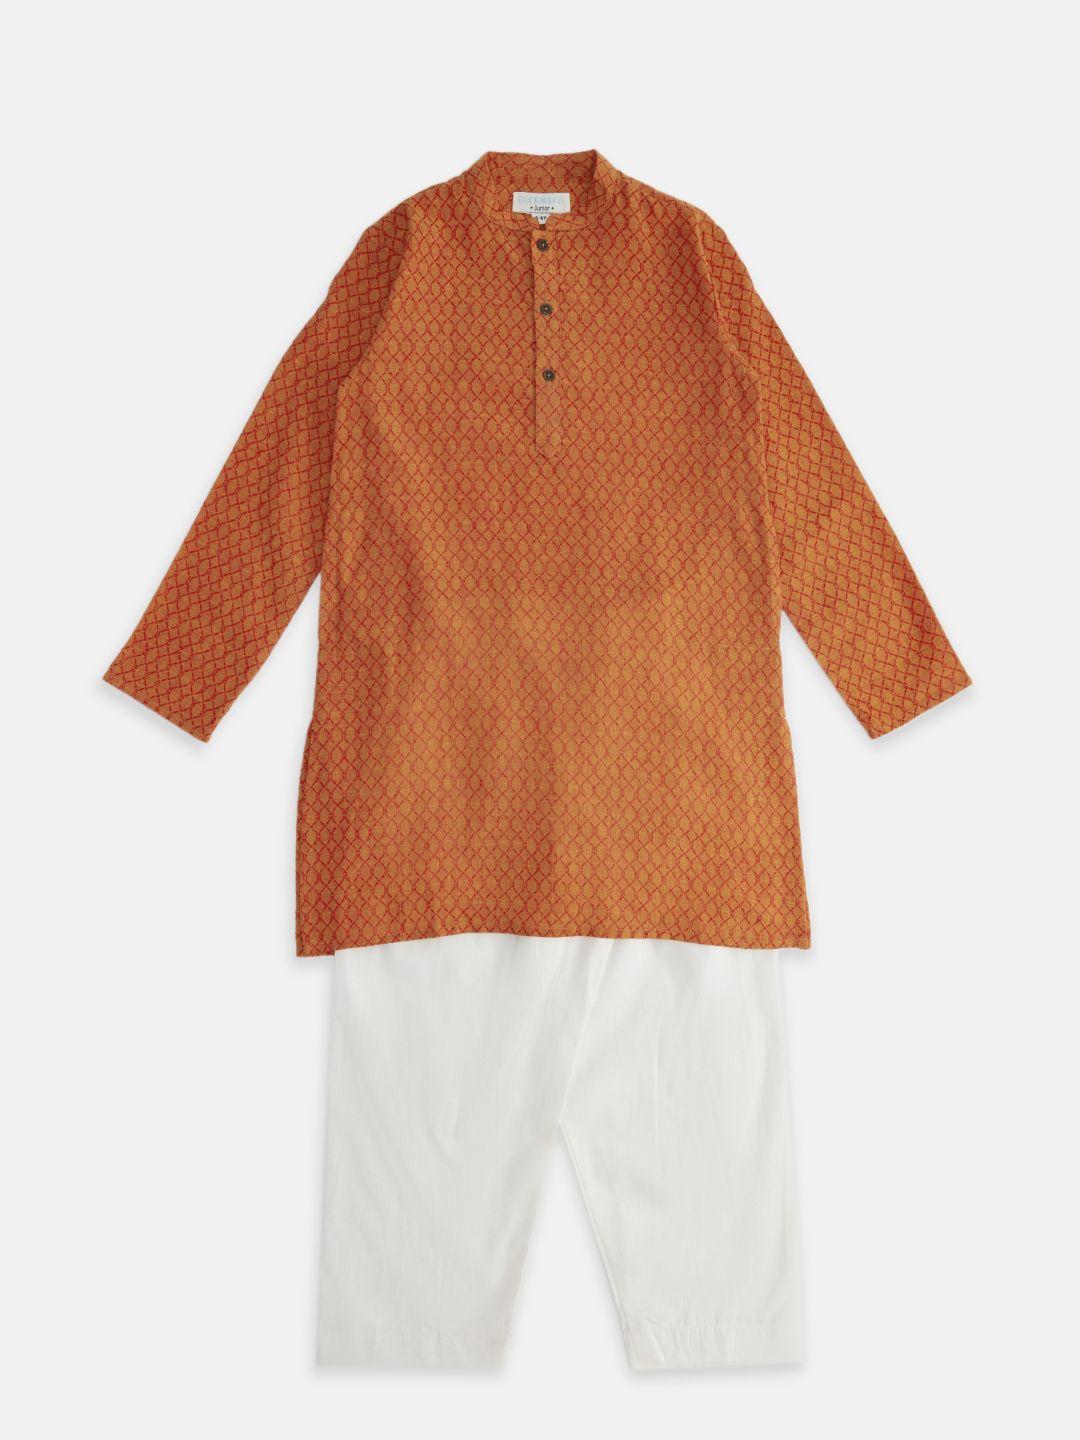 indus-route-by-pantaloons-boys-orange-printed-pure-cotton-kurta-with-pyjama-set